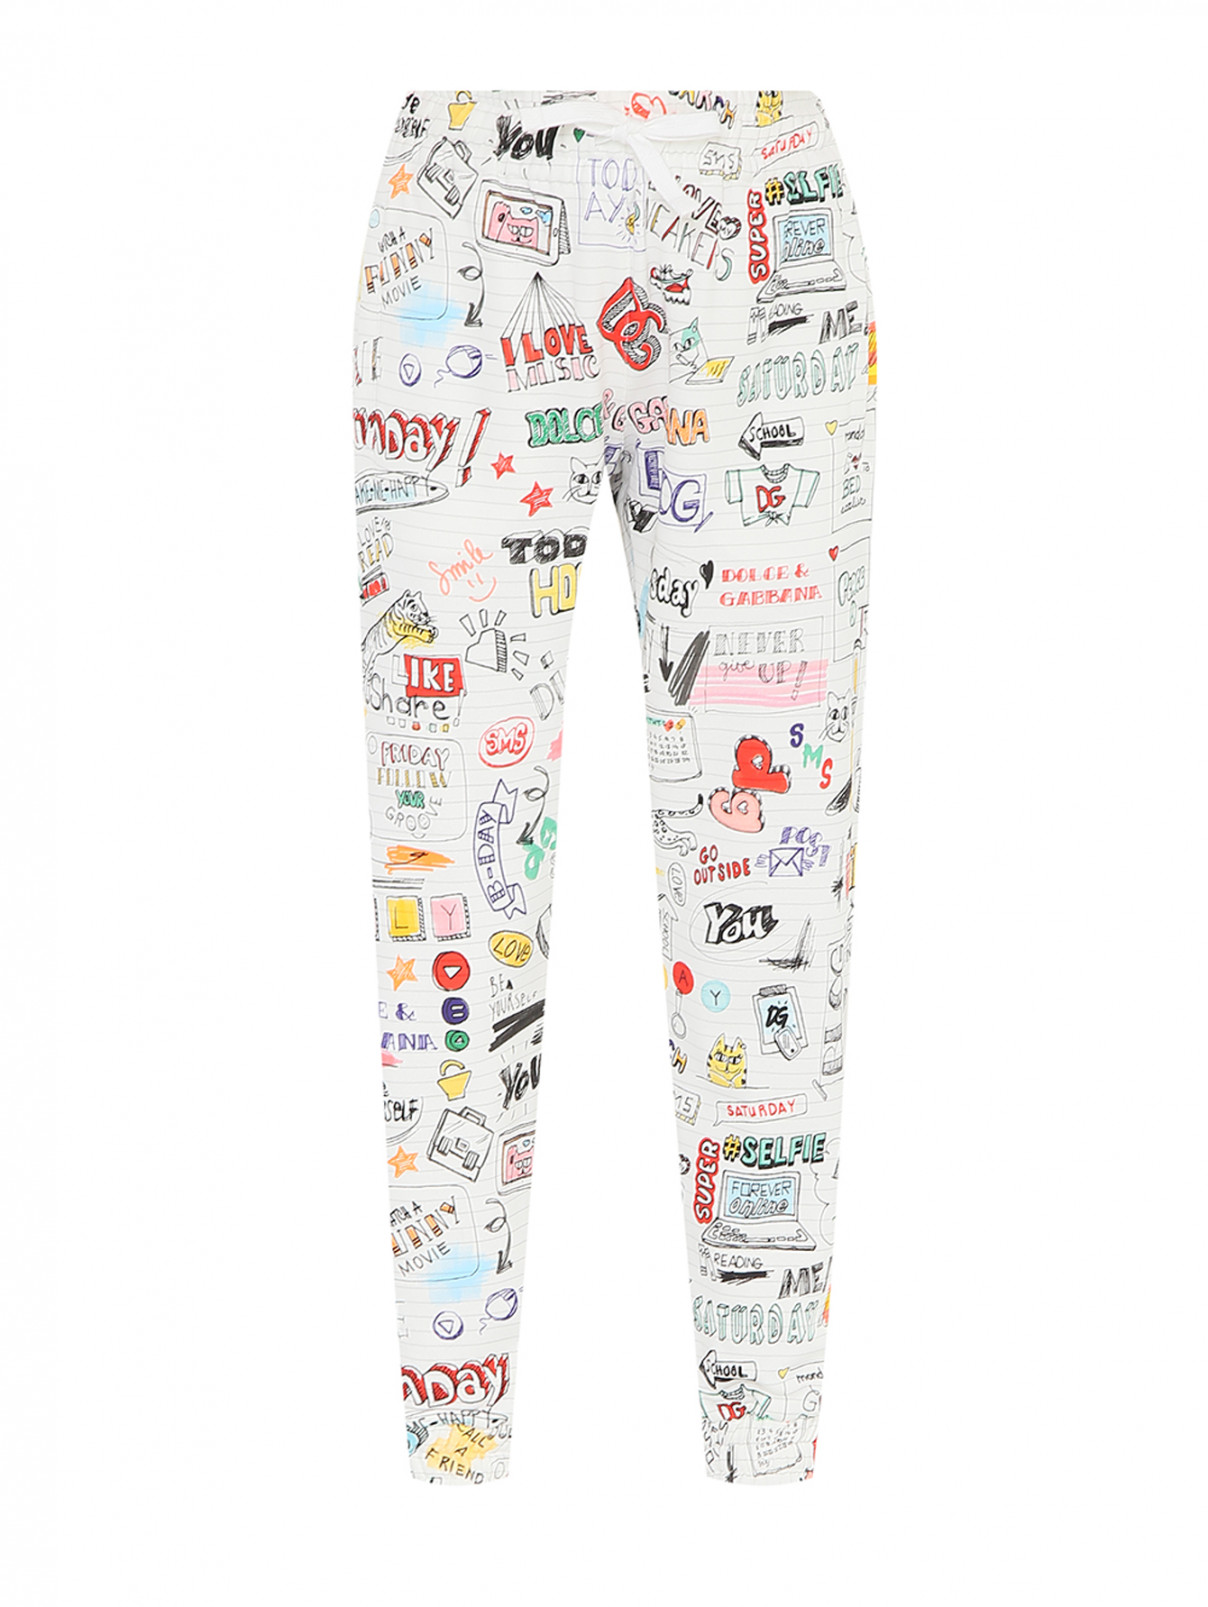 Трикотажные брюки с узором Dolce & Gabbana  –  Общий вид  – Цвет:  Узор